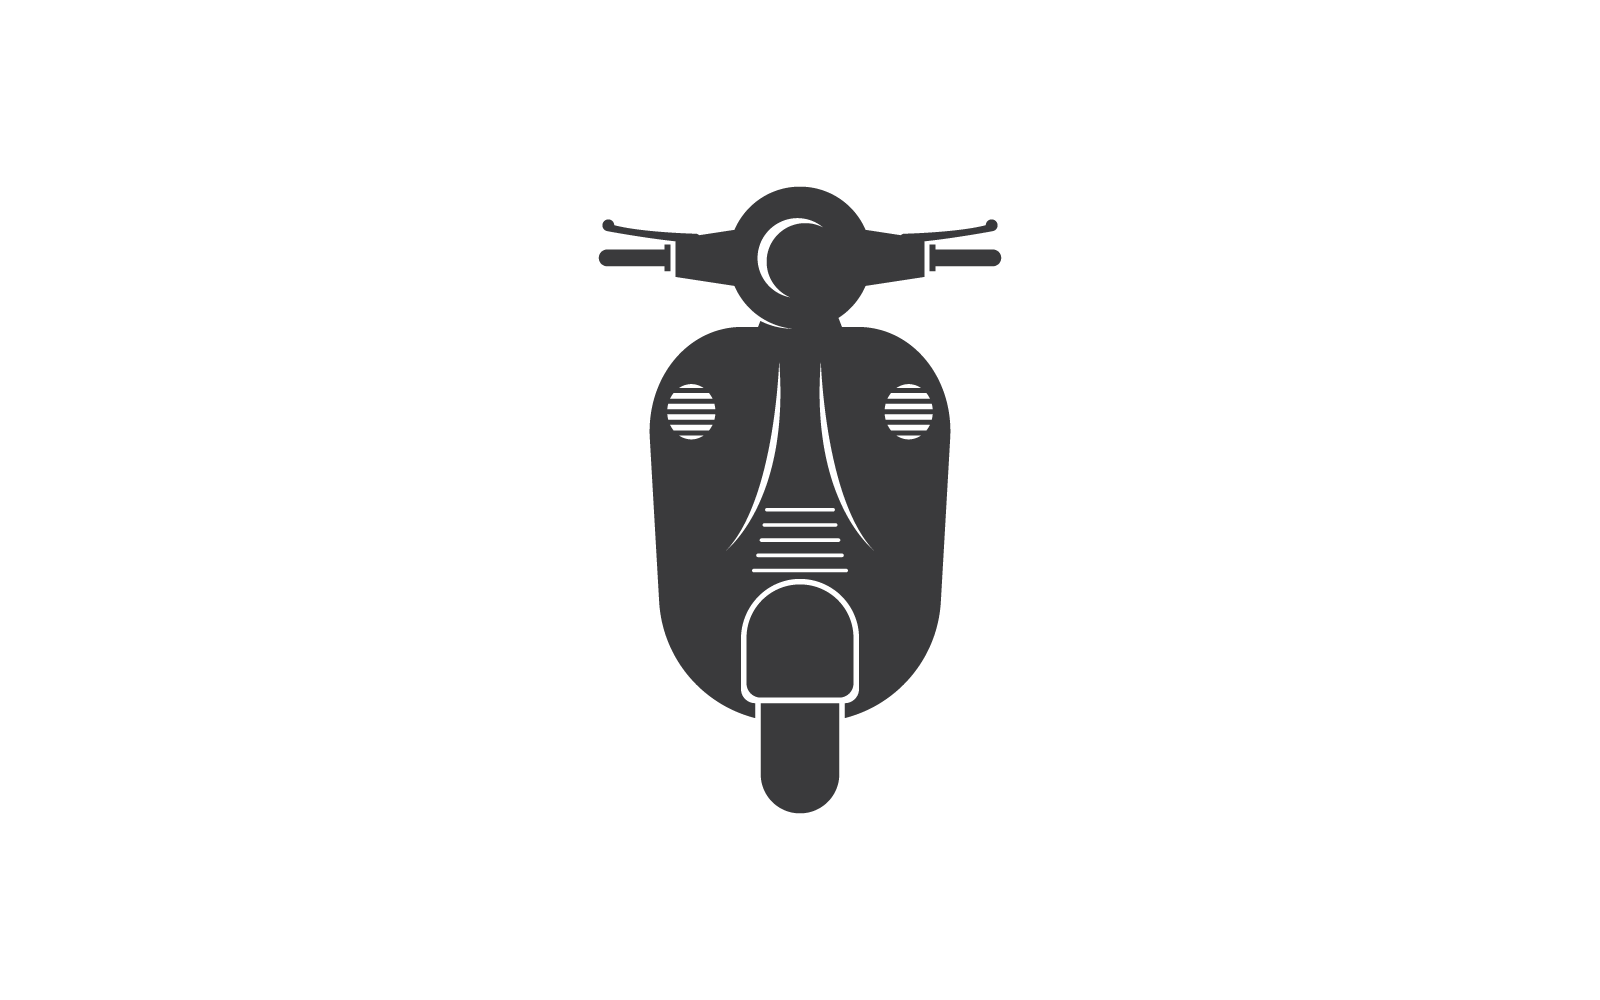 Logo de scooter vectoriel design plat eps 10